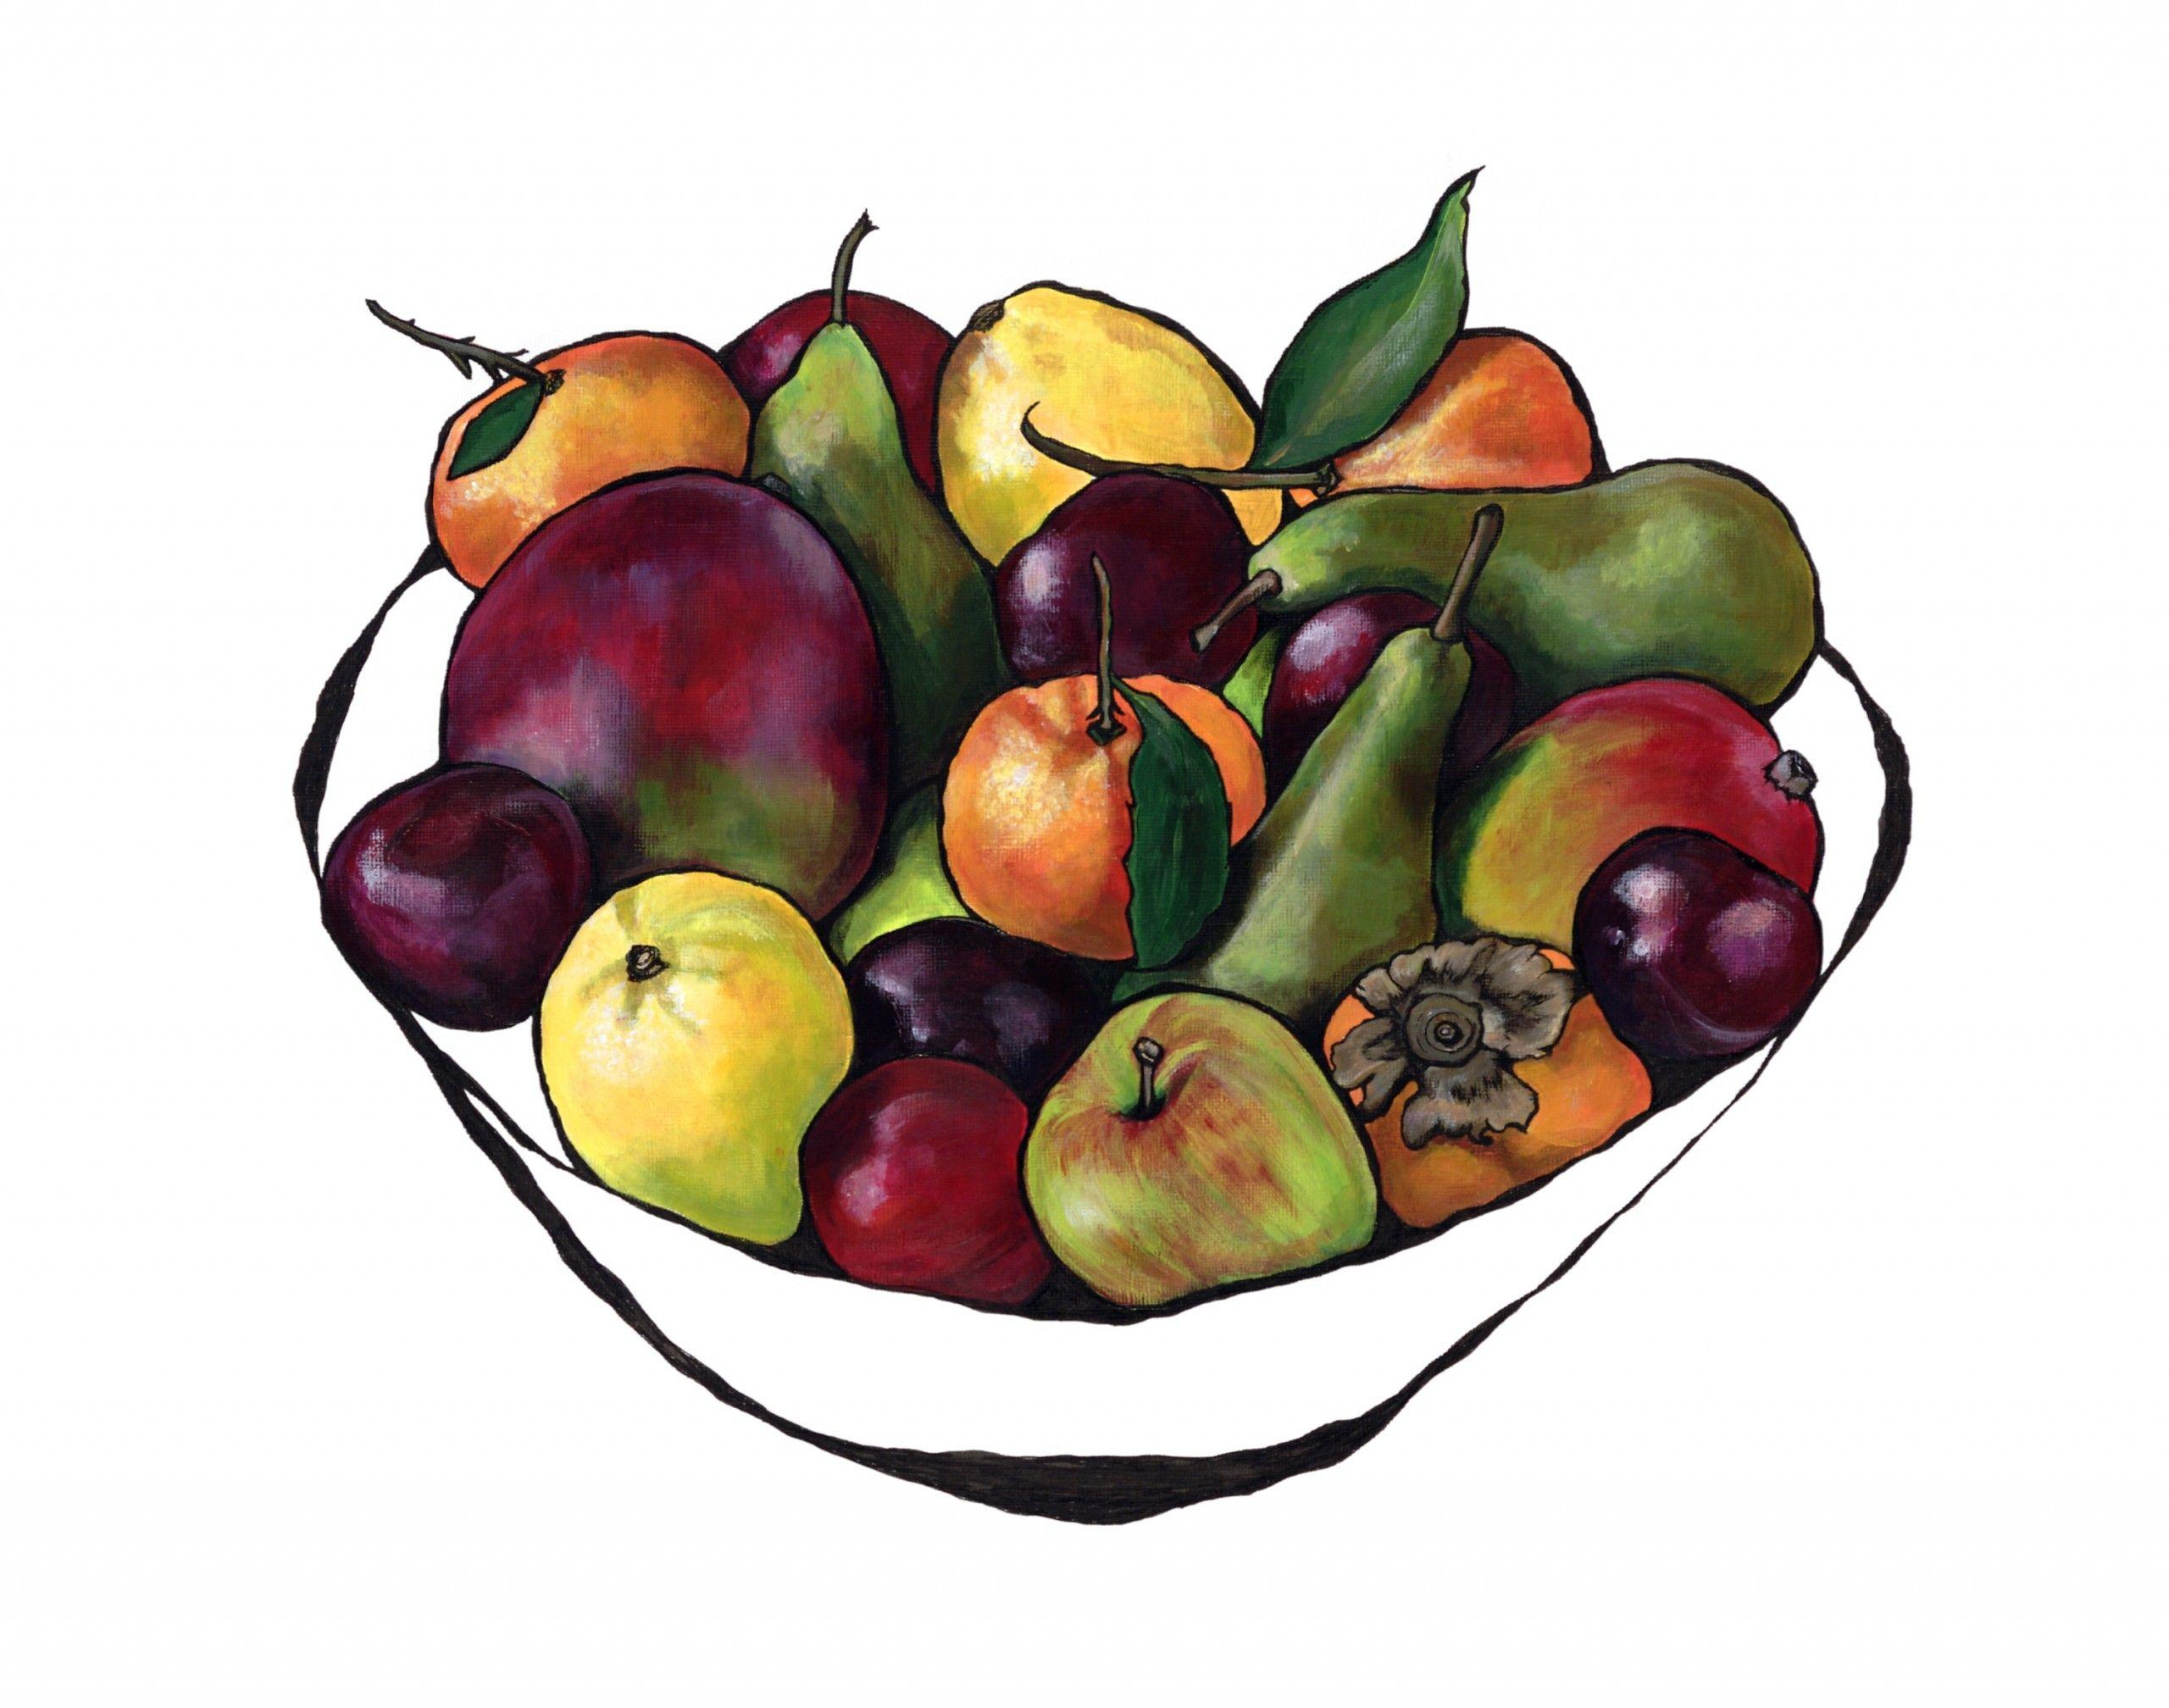 Lucy Routh Print – Abundance of Colour, Giclée-Druck in limitierter Auflage, Lebensmittelkunst, Obst, Kräftige Farben